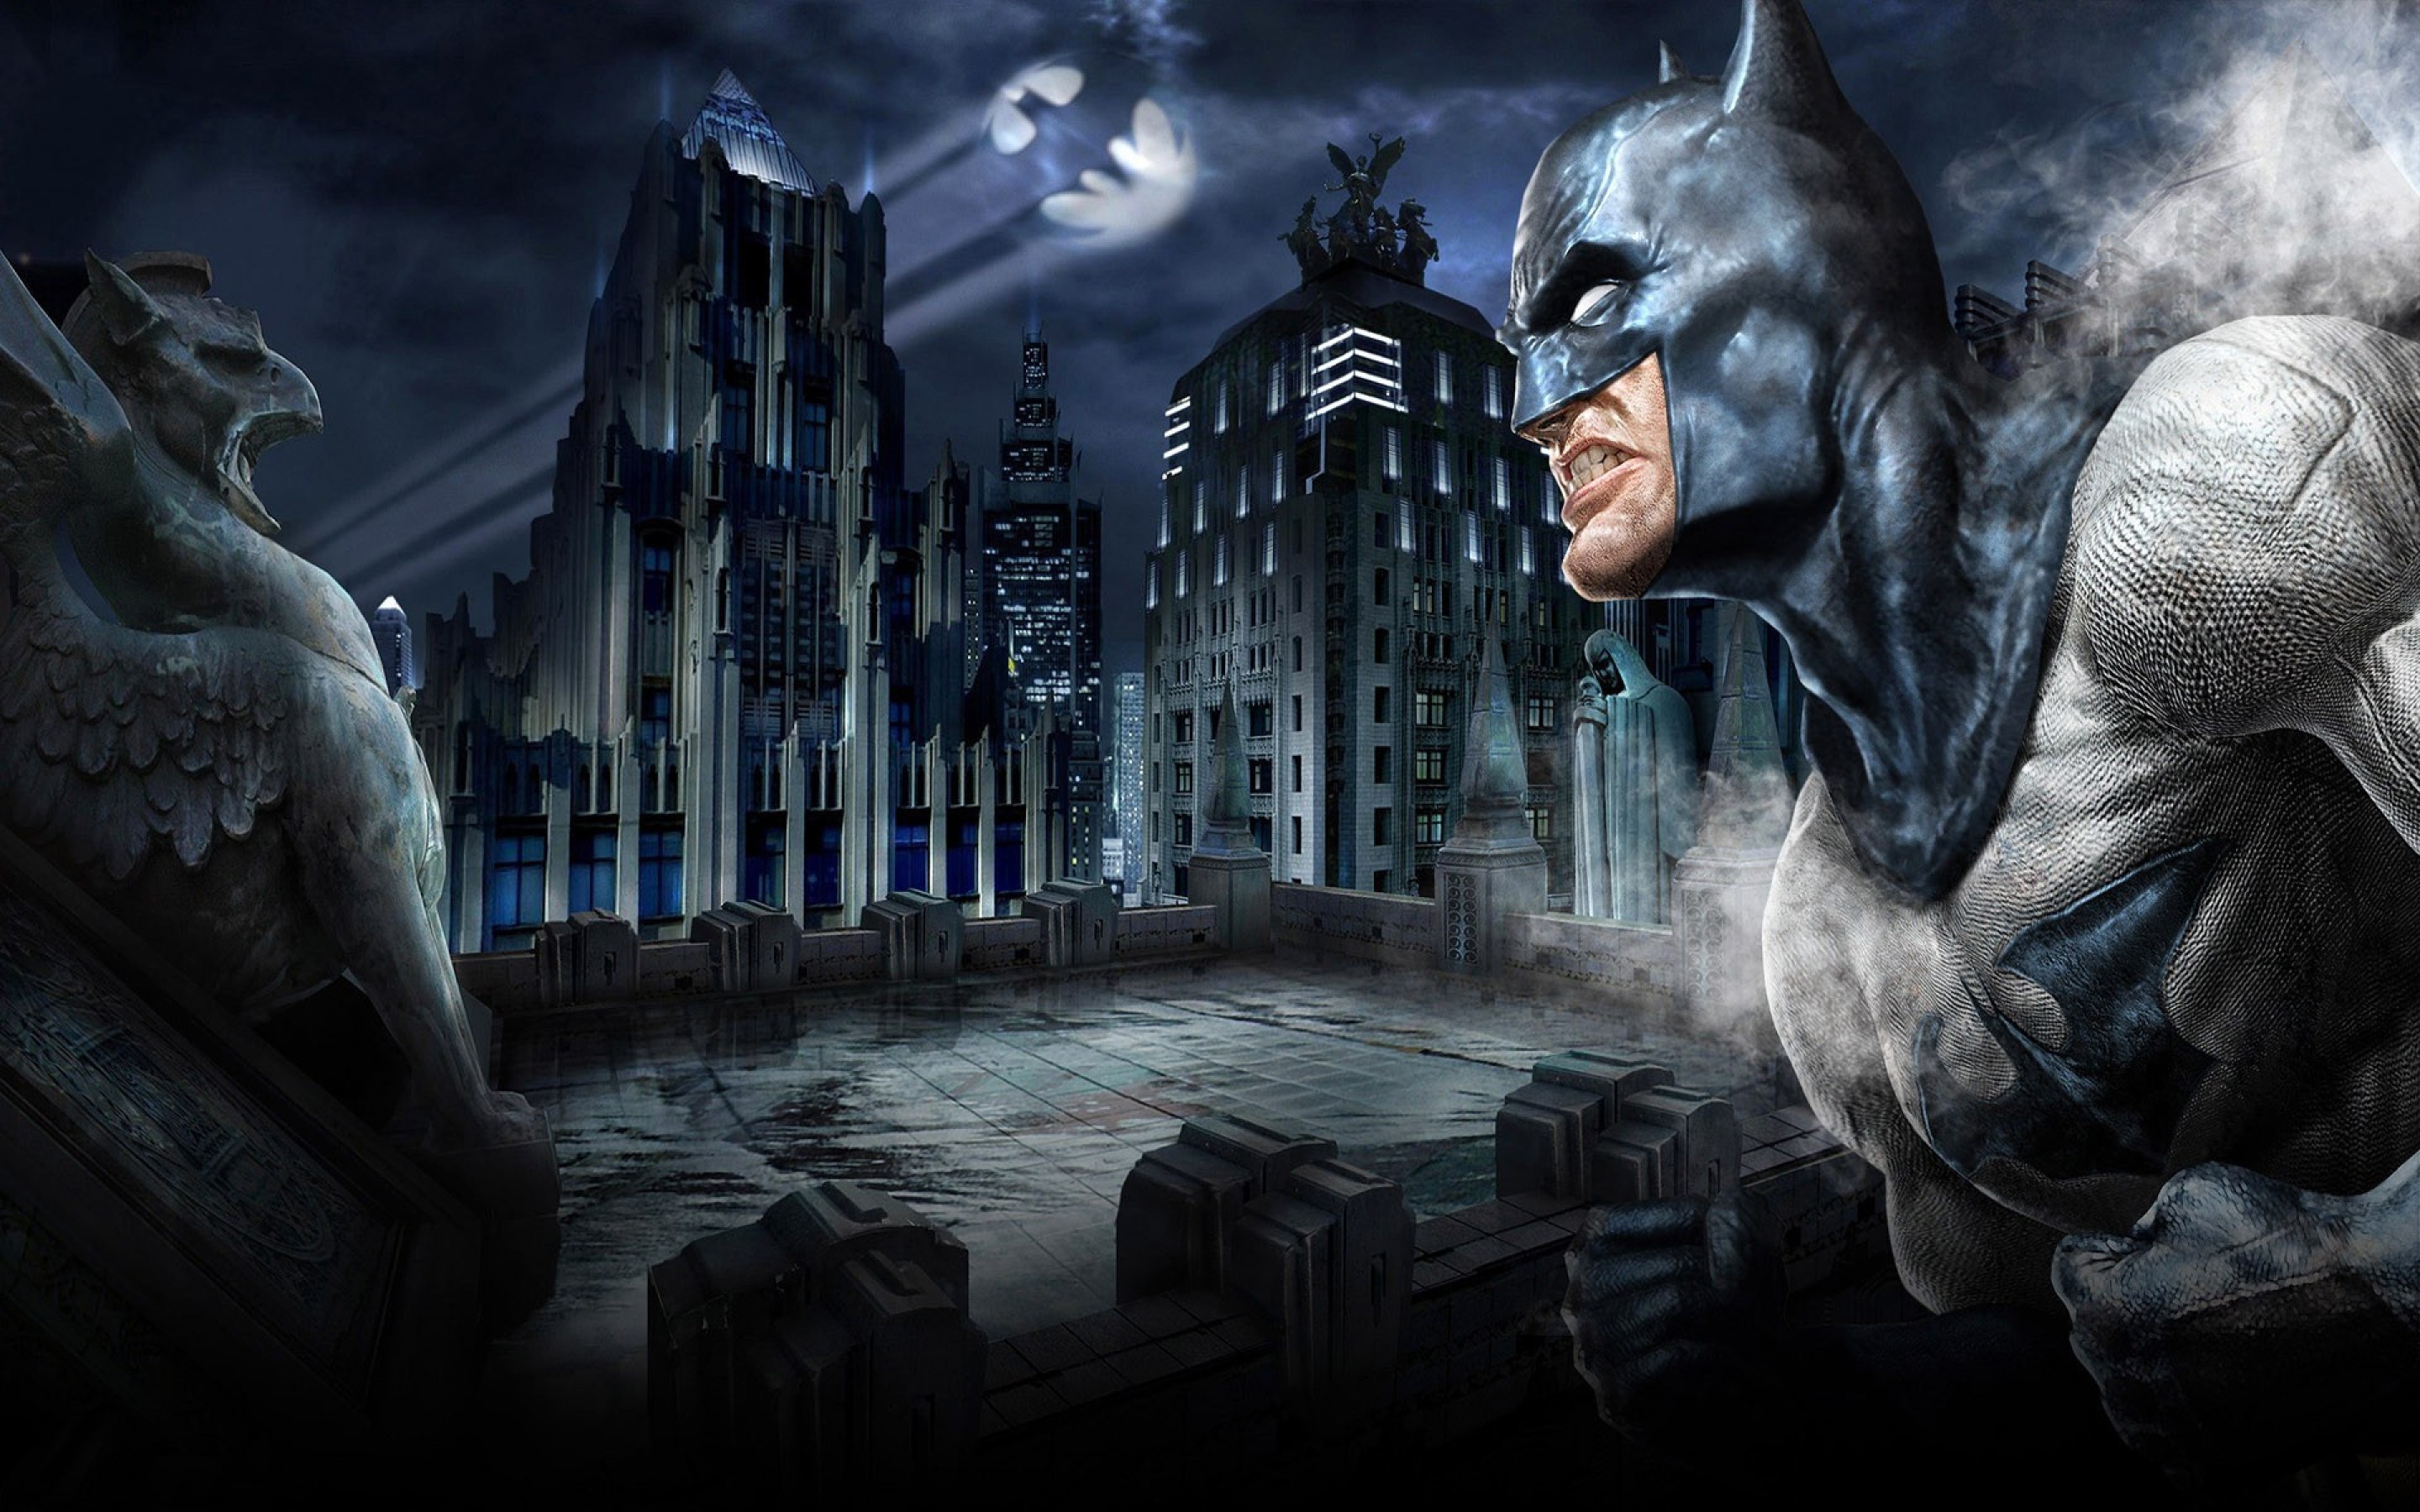 papel tapiz de arte de batman,juego de acción y aventura,hombre murciélago,personaje de ficción,juego de pc,juegos